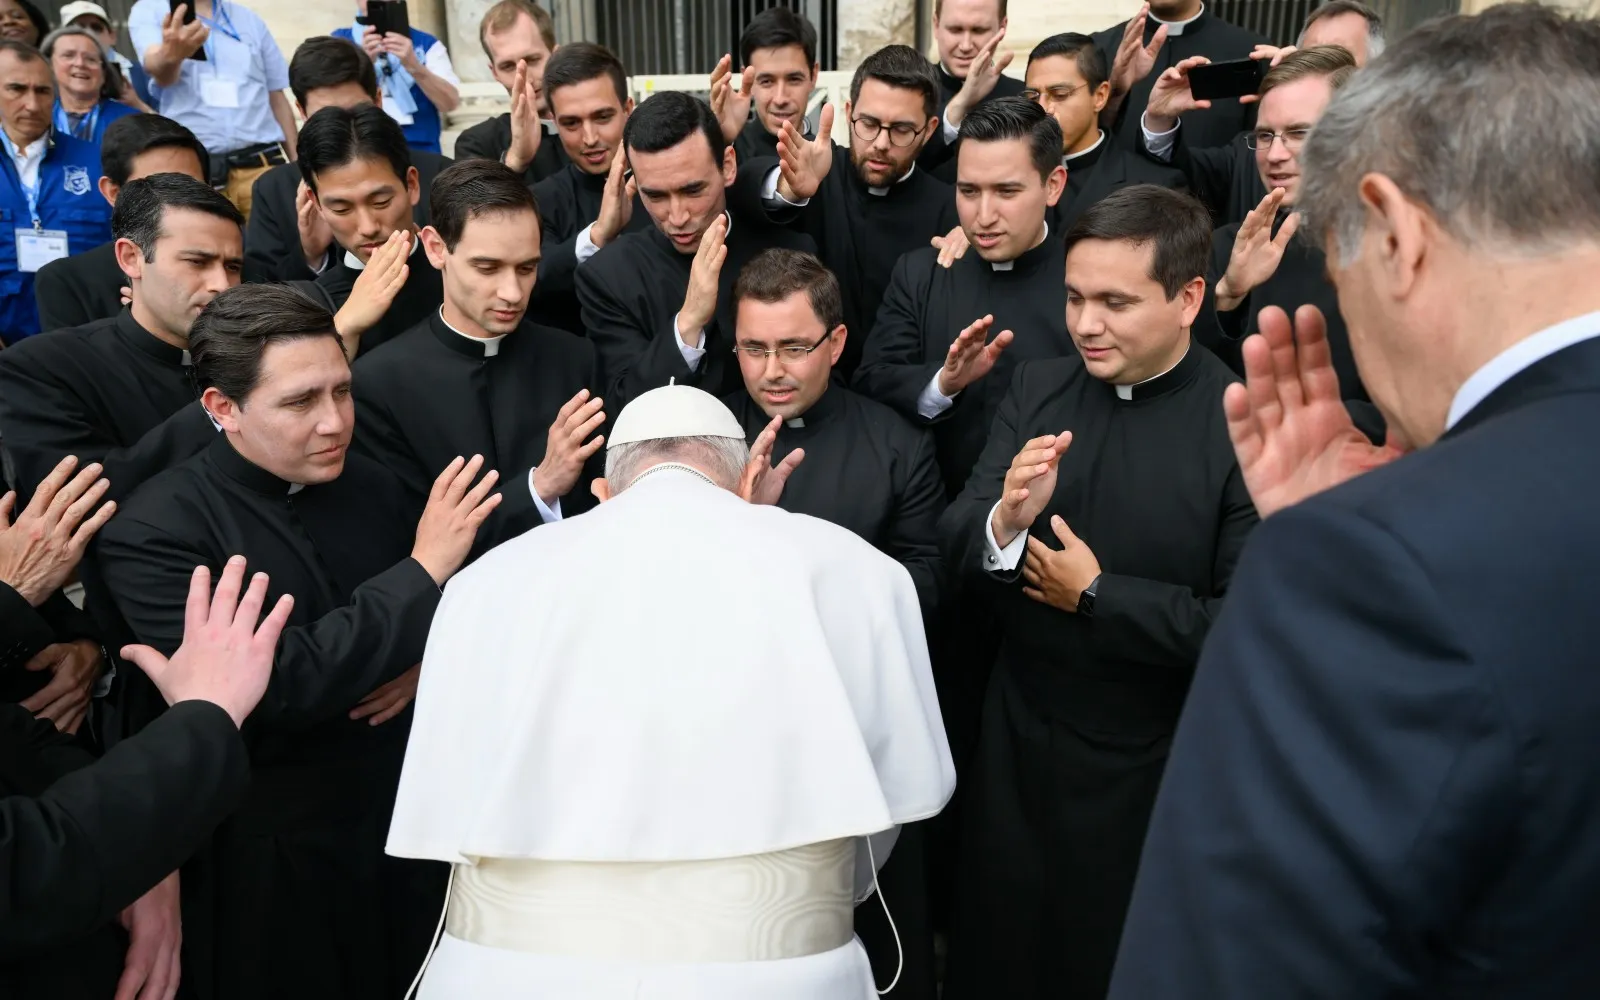 Imagen referencial del Papa Francisco con sacerdotes tras una Audiencia General?w=200&h=150